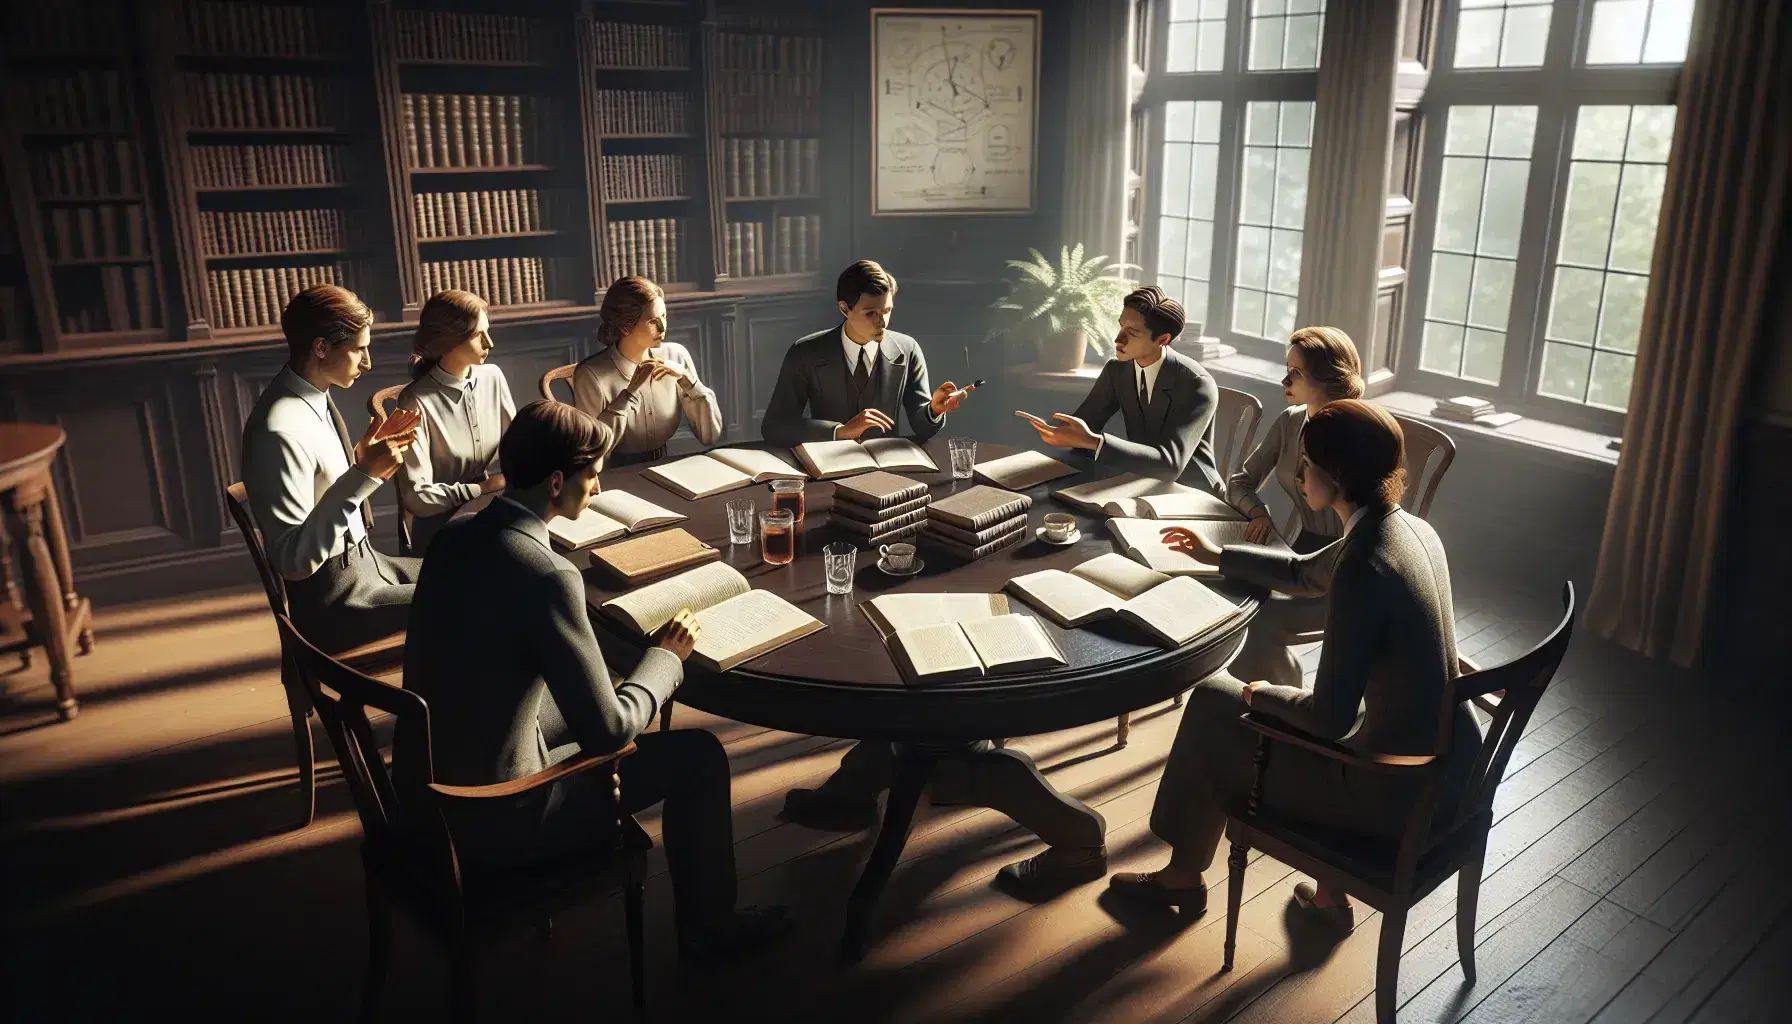 Grupo de cinco profesionales en reunión de trabajo alrededor de una mesa redonda en una sala iluminada naturalmente, con libros, papeles y tazas de café.